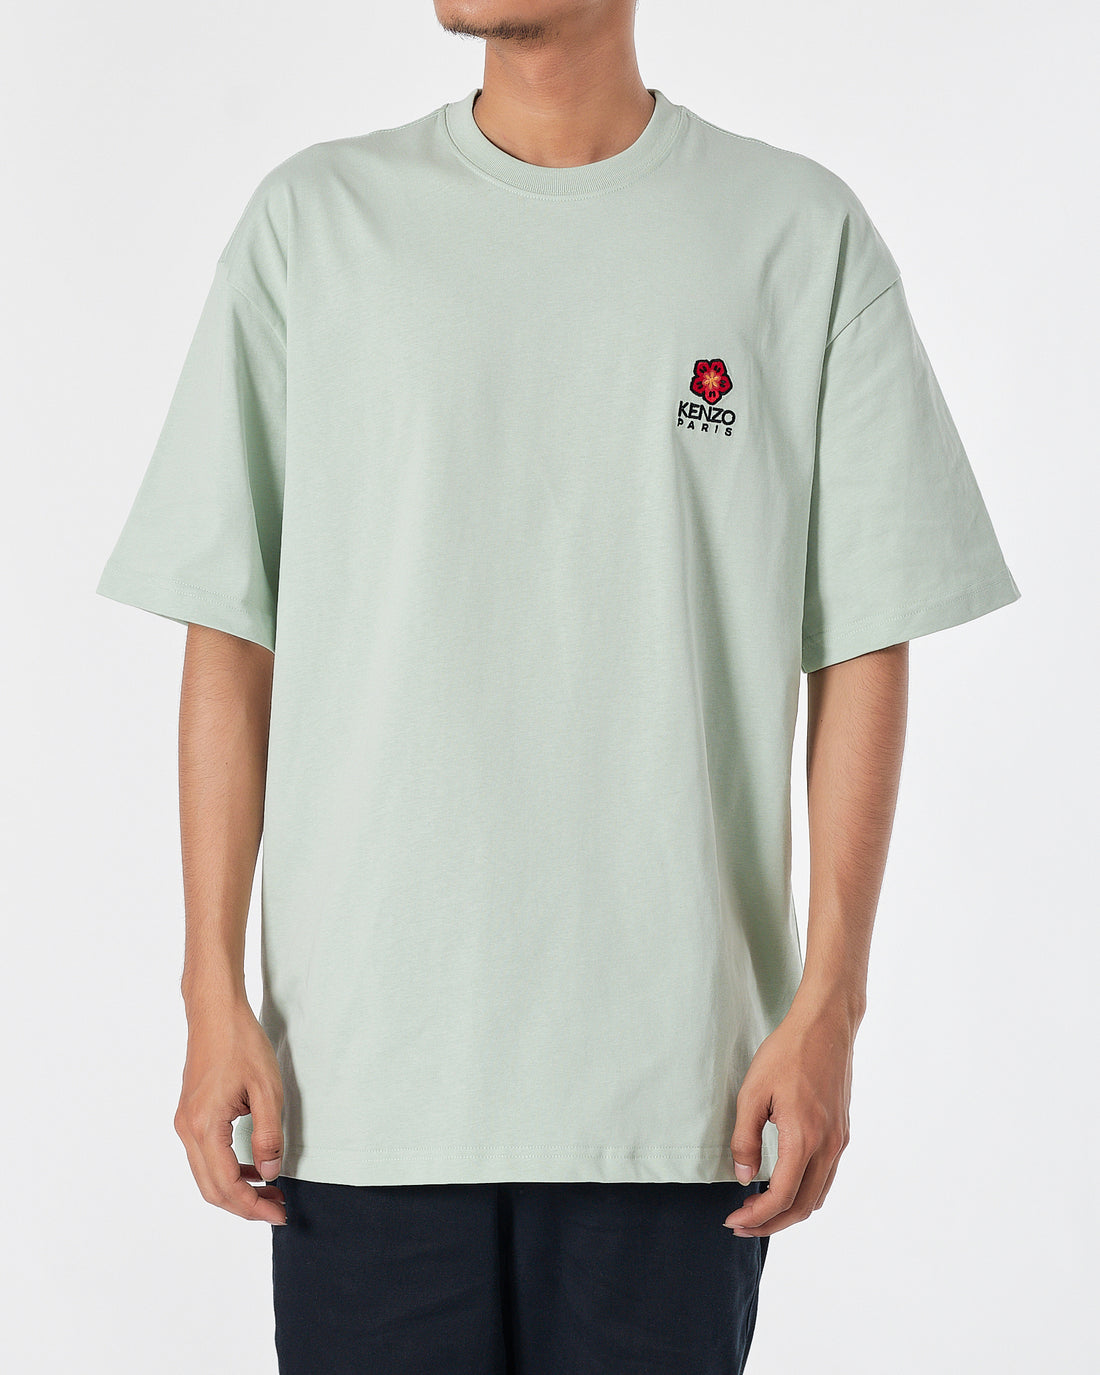 KEN Flower Embroidered Men Green T-Shirt 17.90